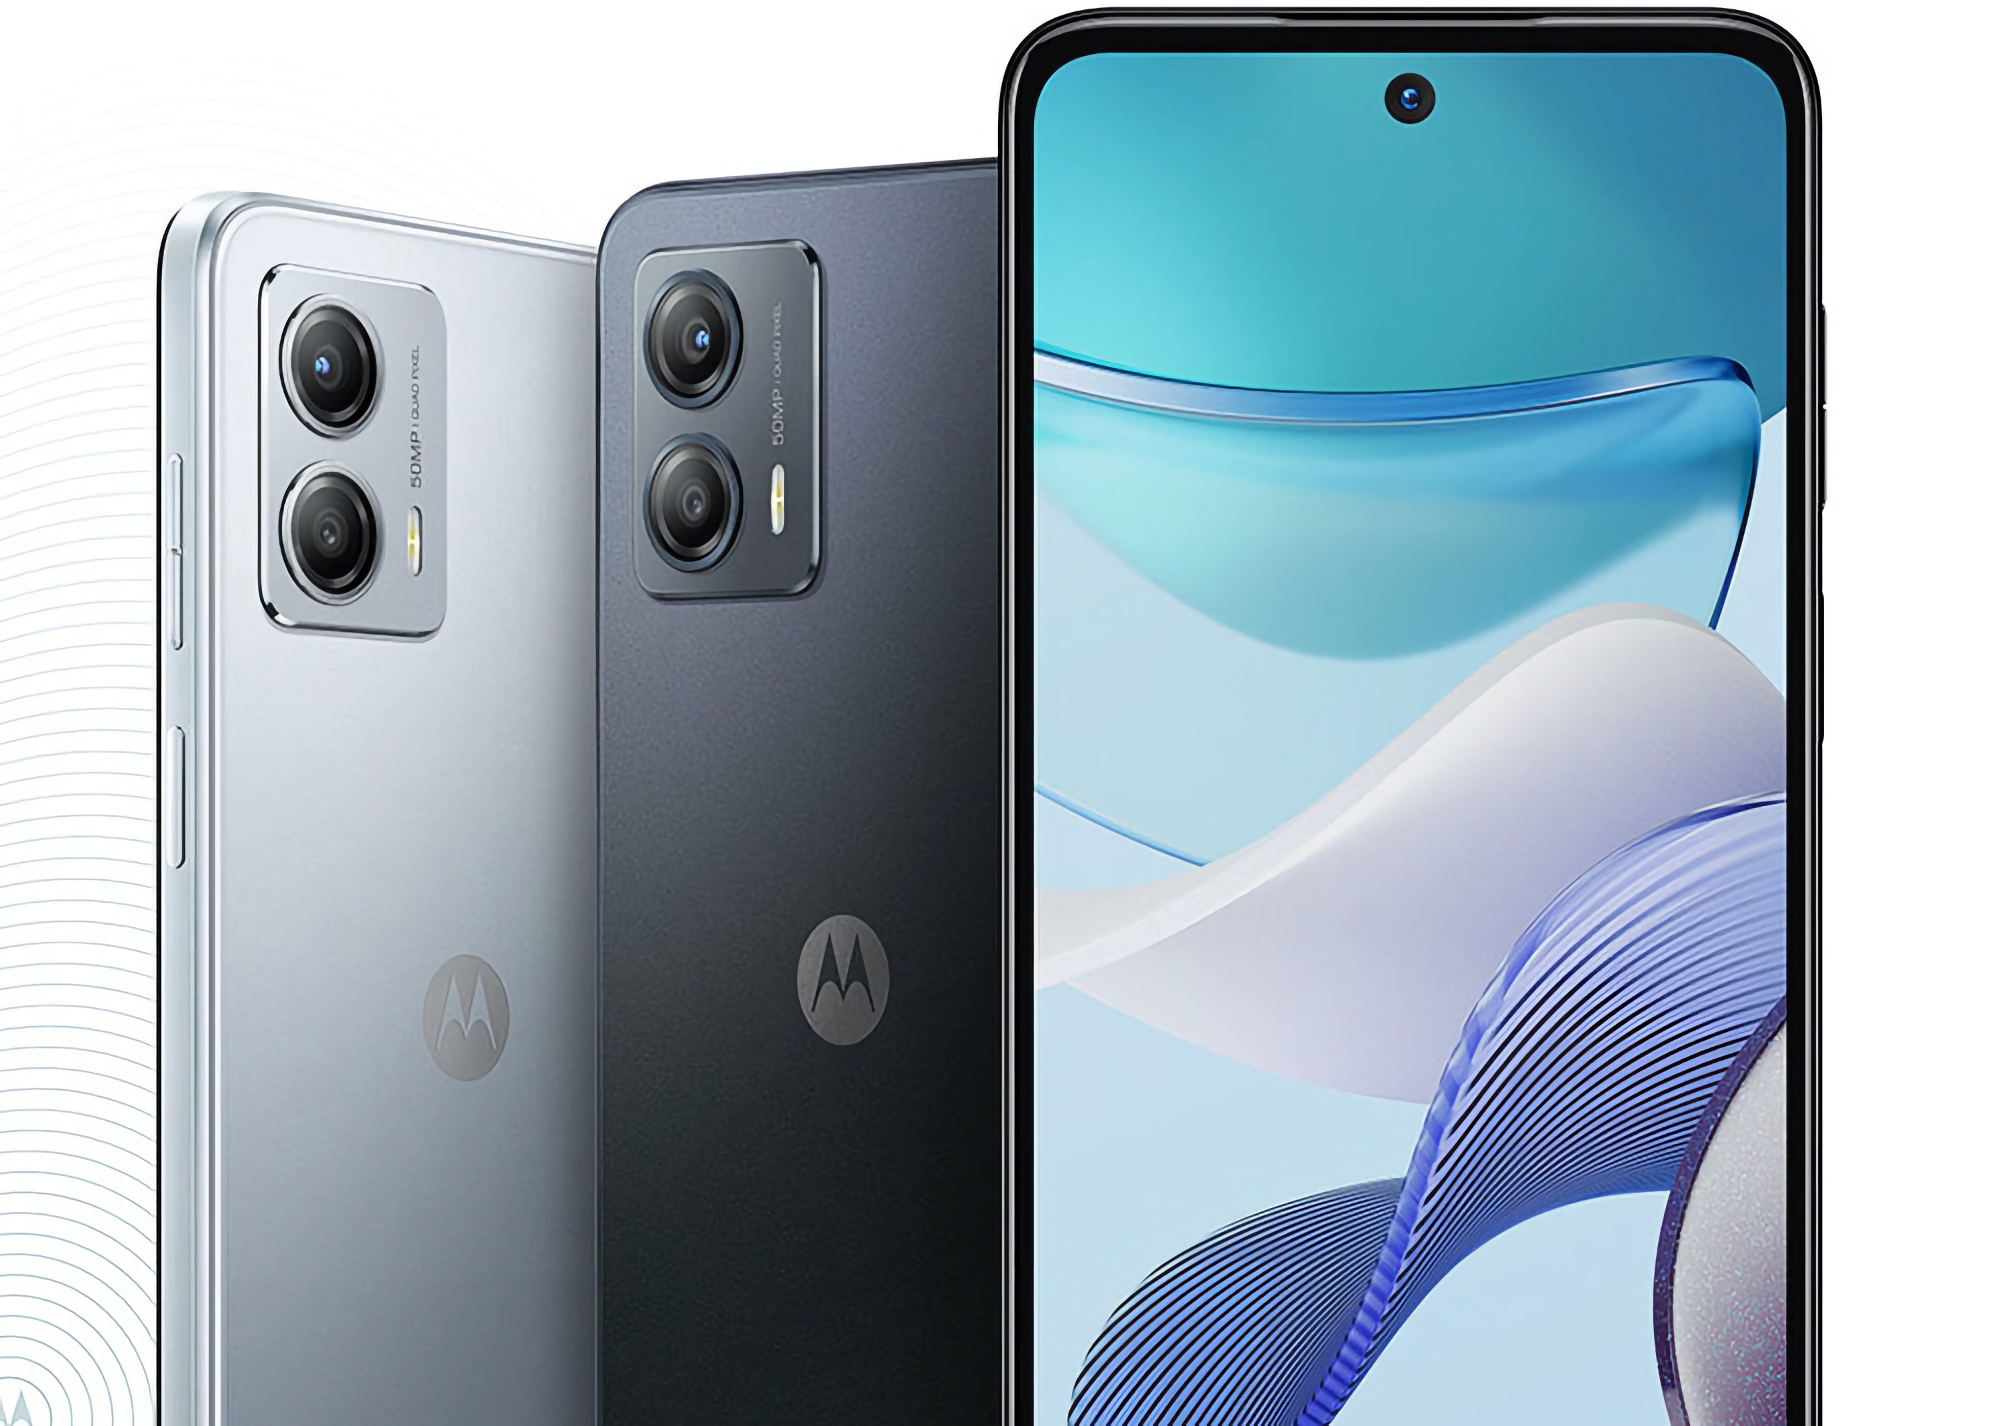 Motorola bereitet sich auf die Veröffentlichung einer globalen Version des Moto G53 vor: Die Neuheit wird einen 120-Hz-Bildschirm, einen Snapdragon 480+ Chip und eine 50-MP-Kamera erhalten